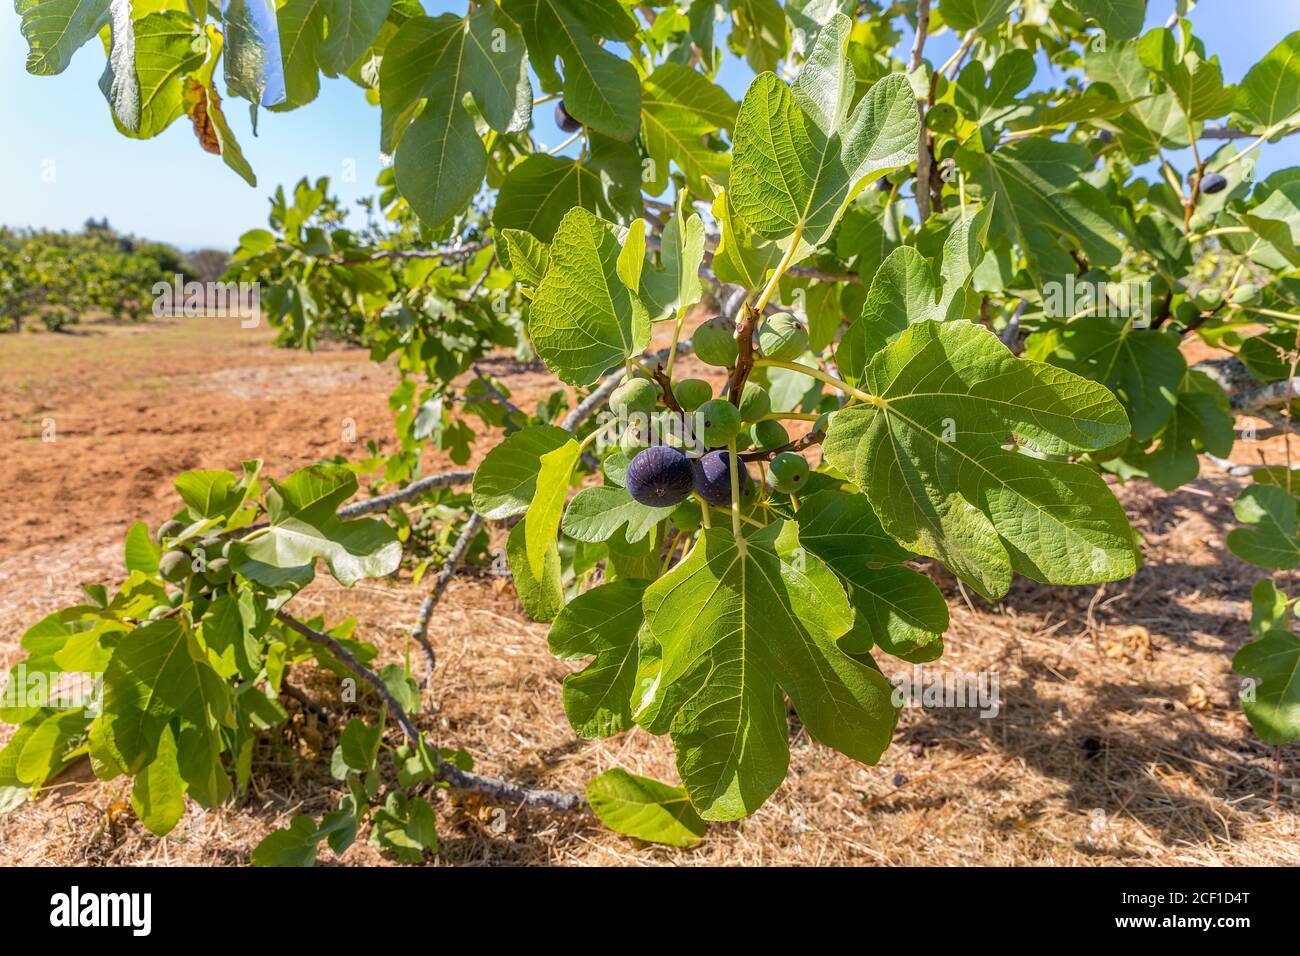 Grupo de higos como frutos colgando en las ramas de la higuera con hojas en el huerto portugués Foto de stock